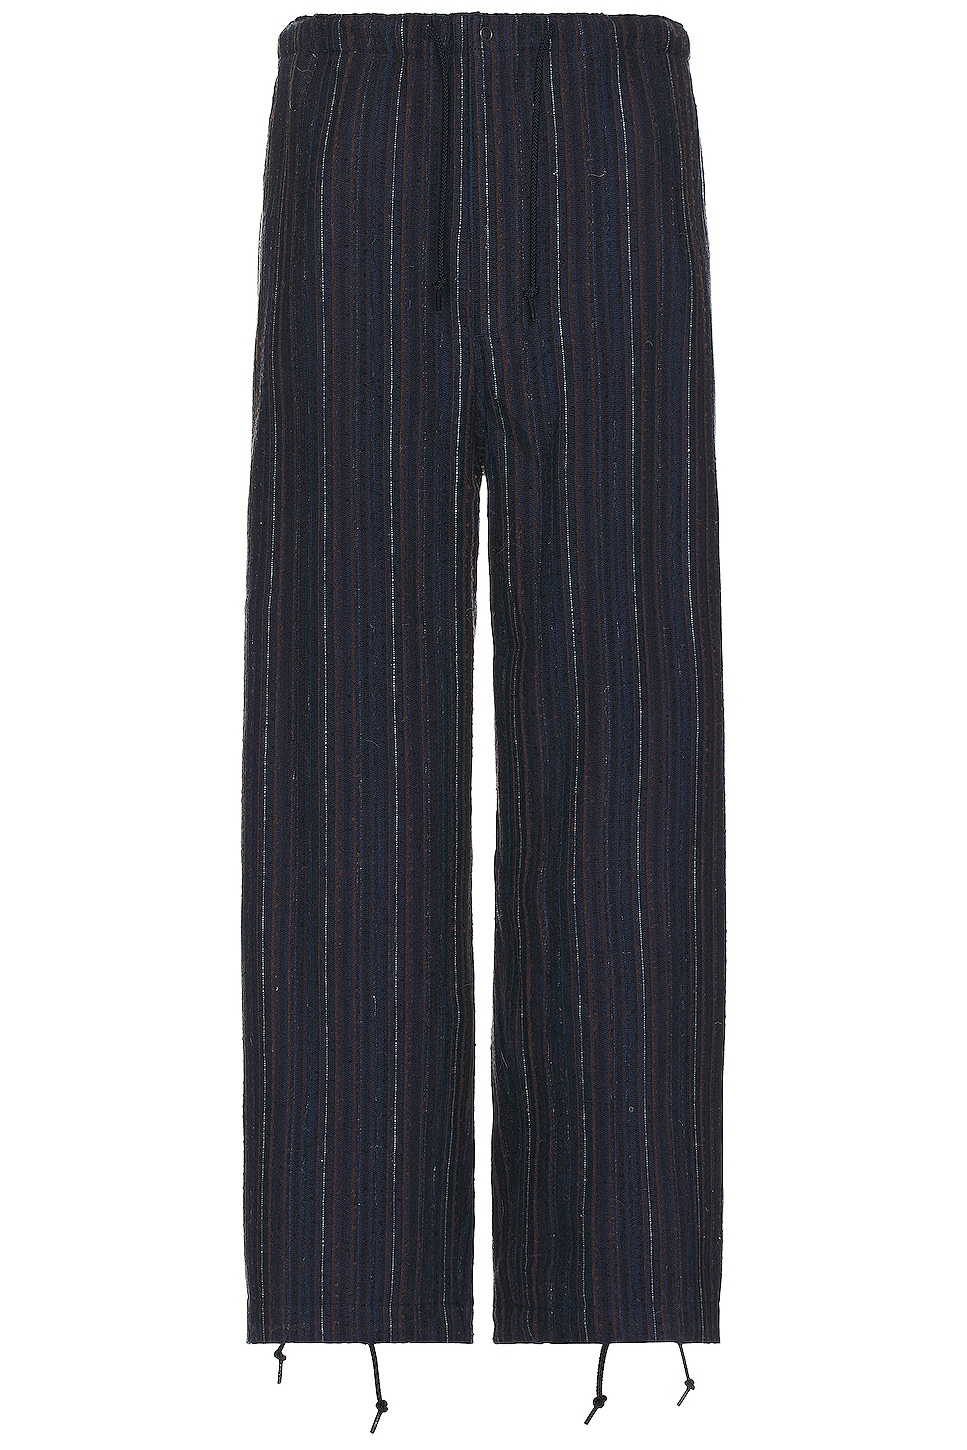 Beams Plus Mil Easy Pants Hickory Tweed Pant in Navy | FWRD